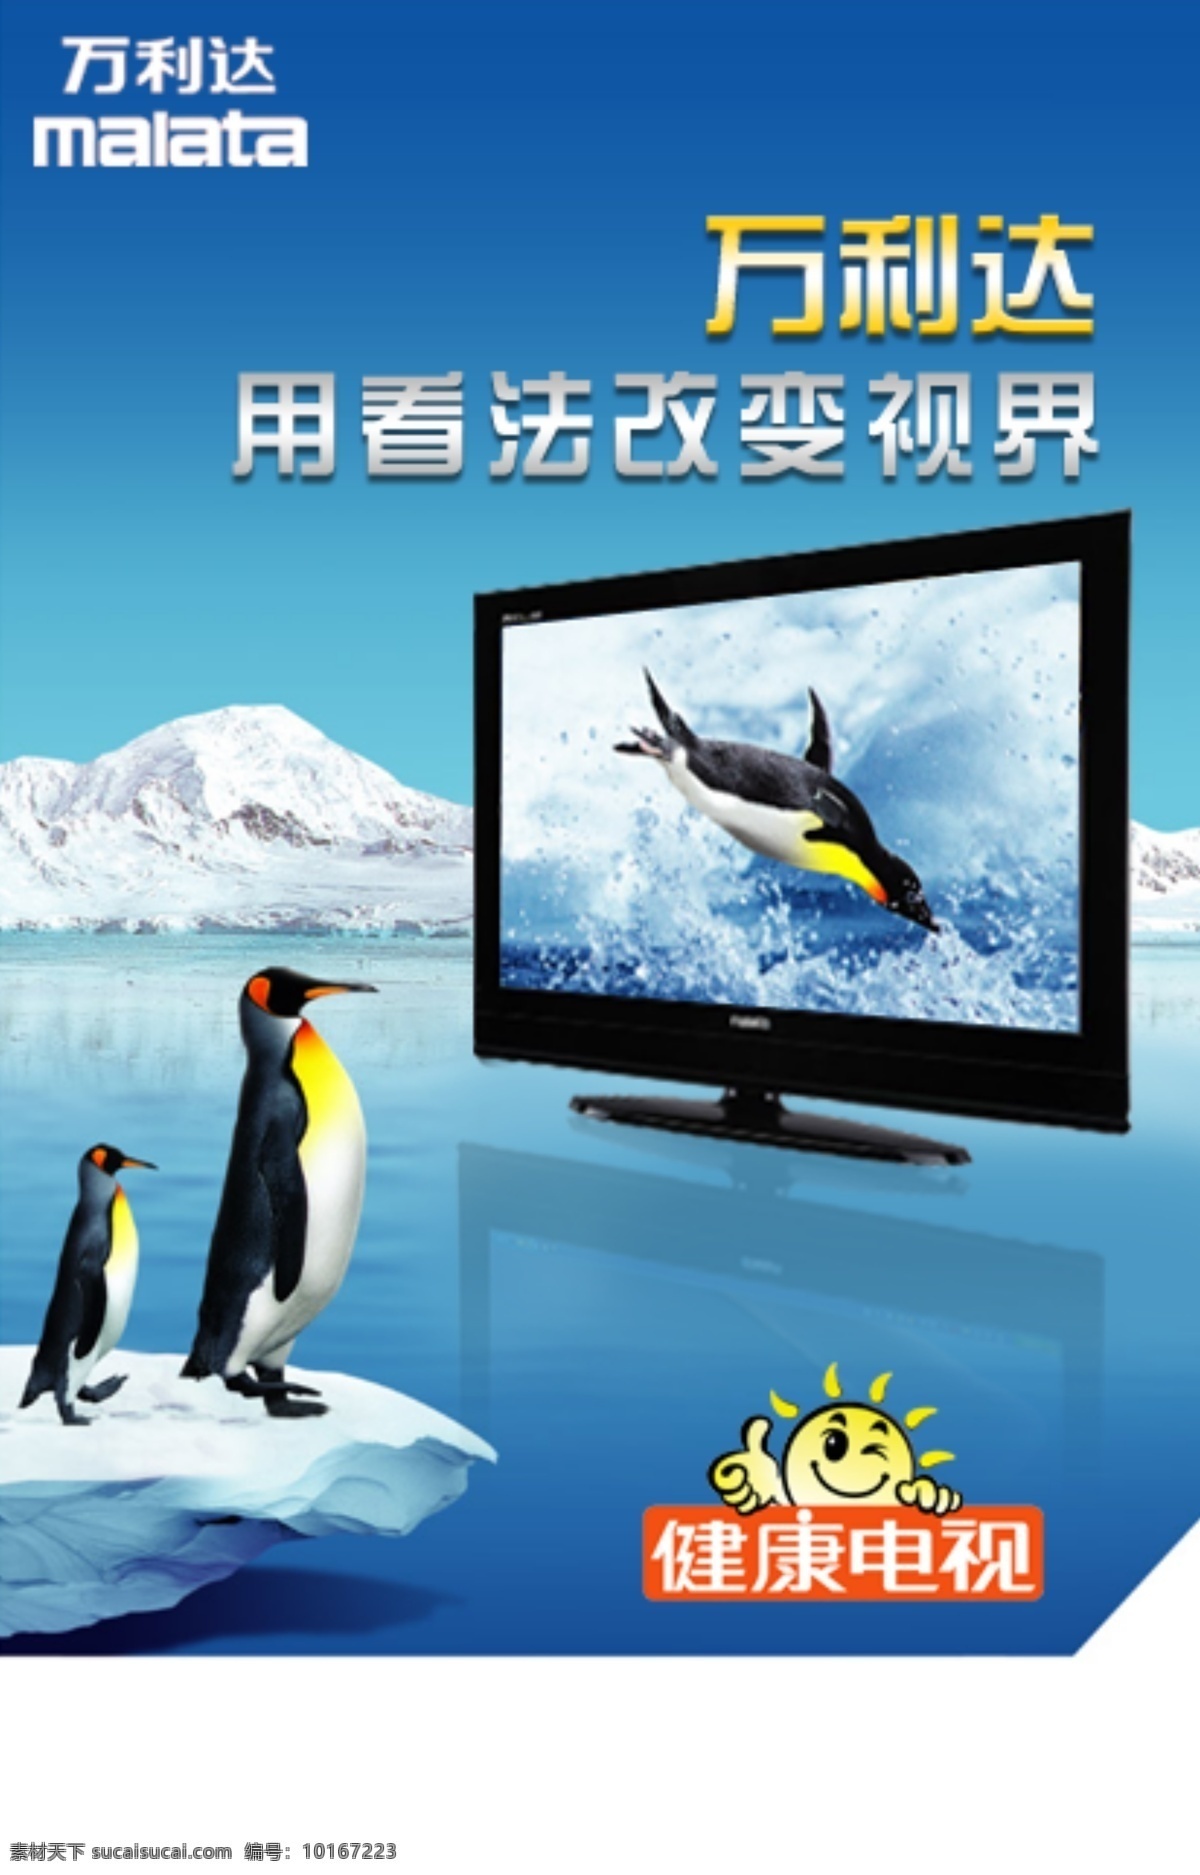 万利达 电脑电视 南极 企鹅 电视 健康电视 广告设计模板 源文件